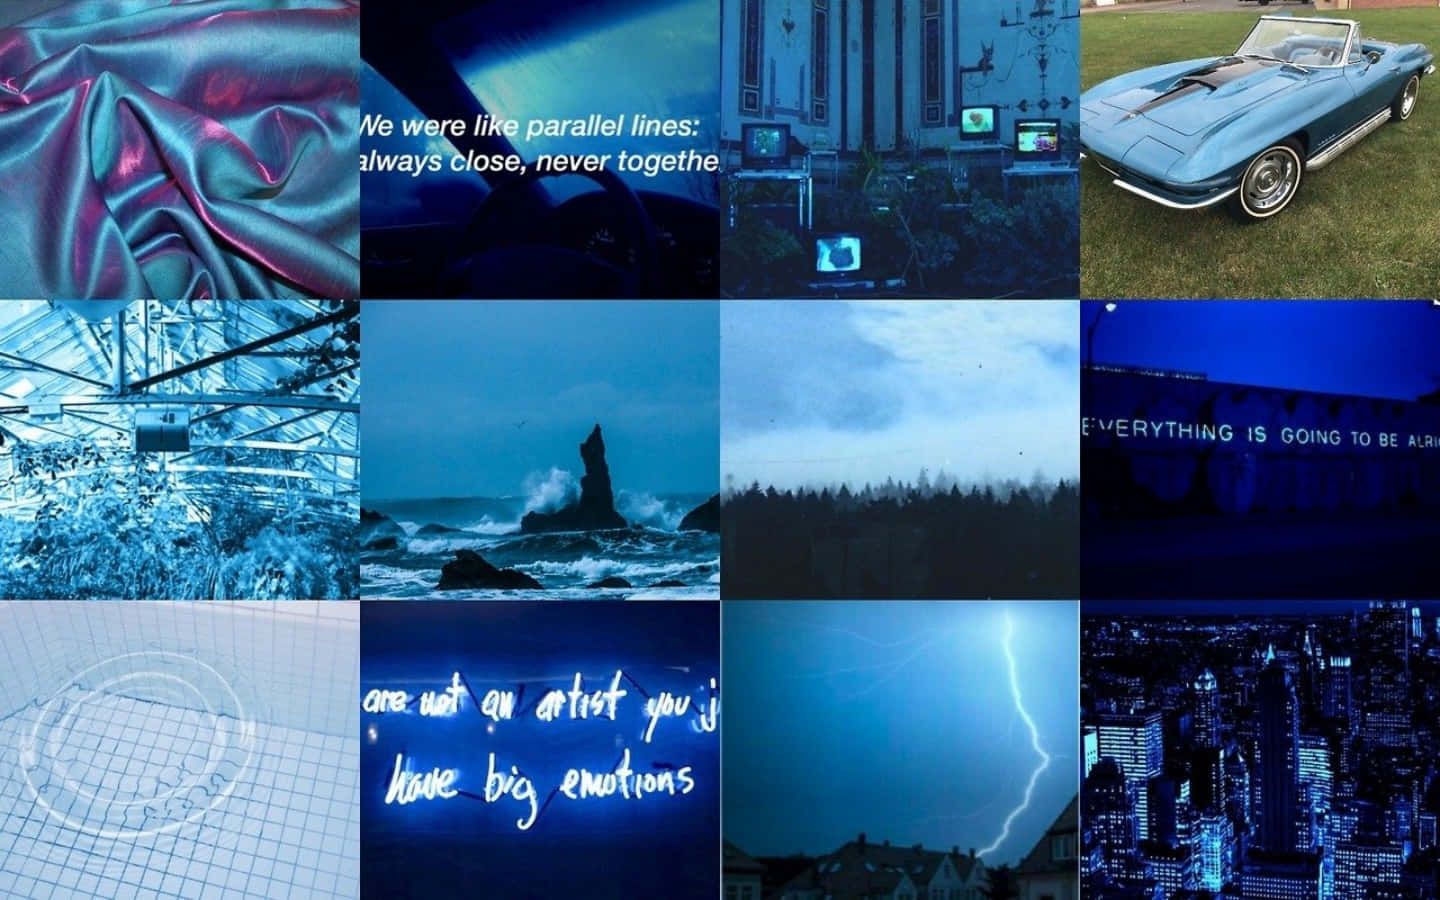 Den ultimative inspiration - en drømmende blå collage med et visuelt illusion af former og farver. Wallpaper